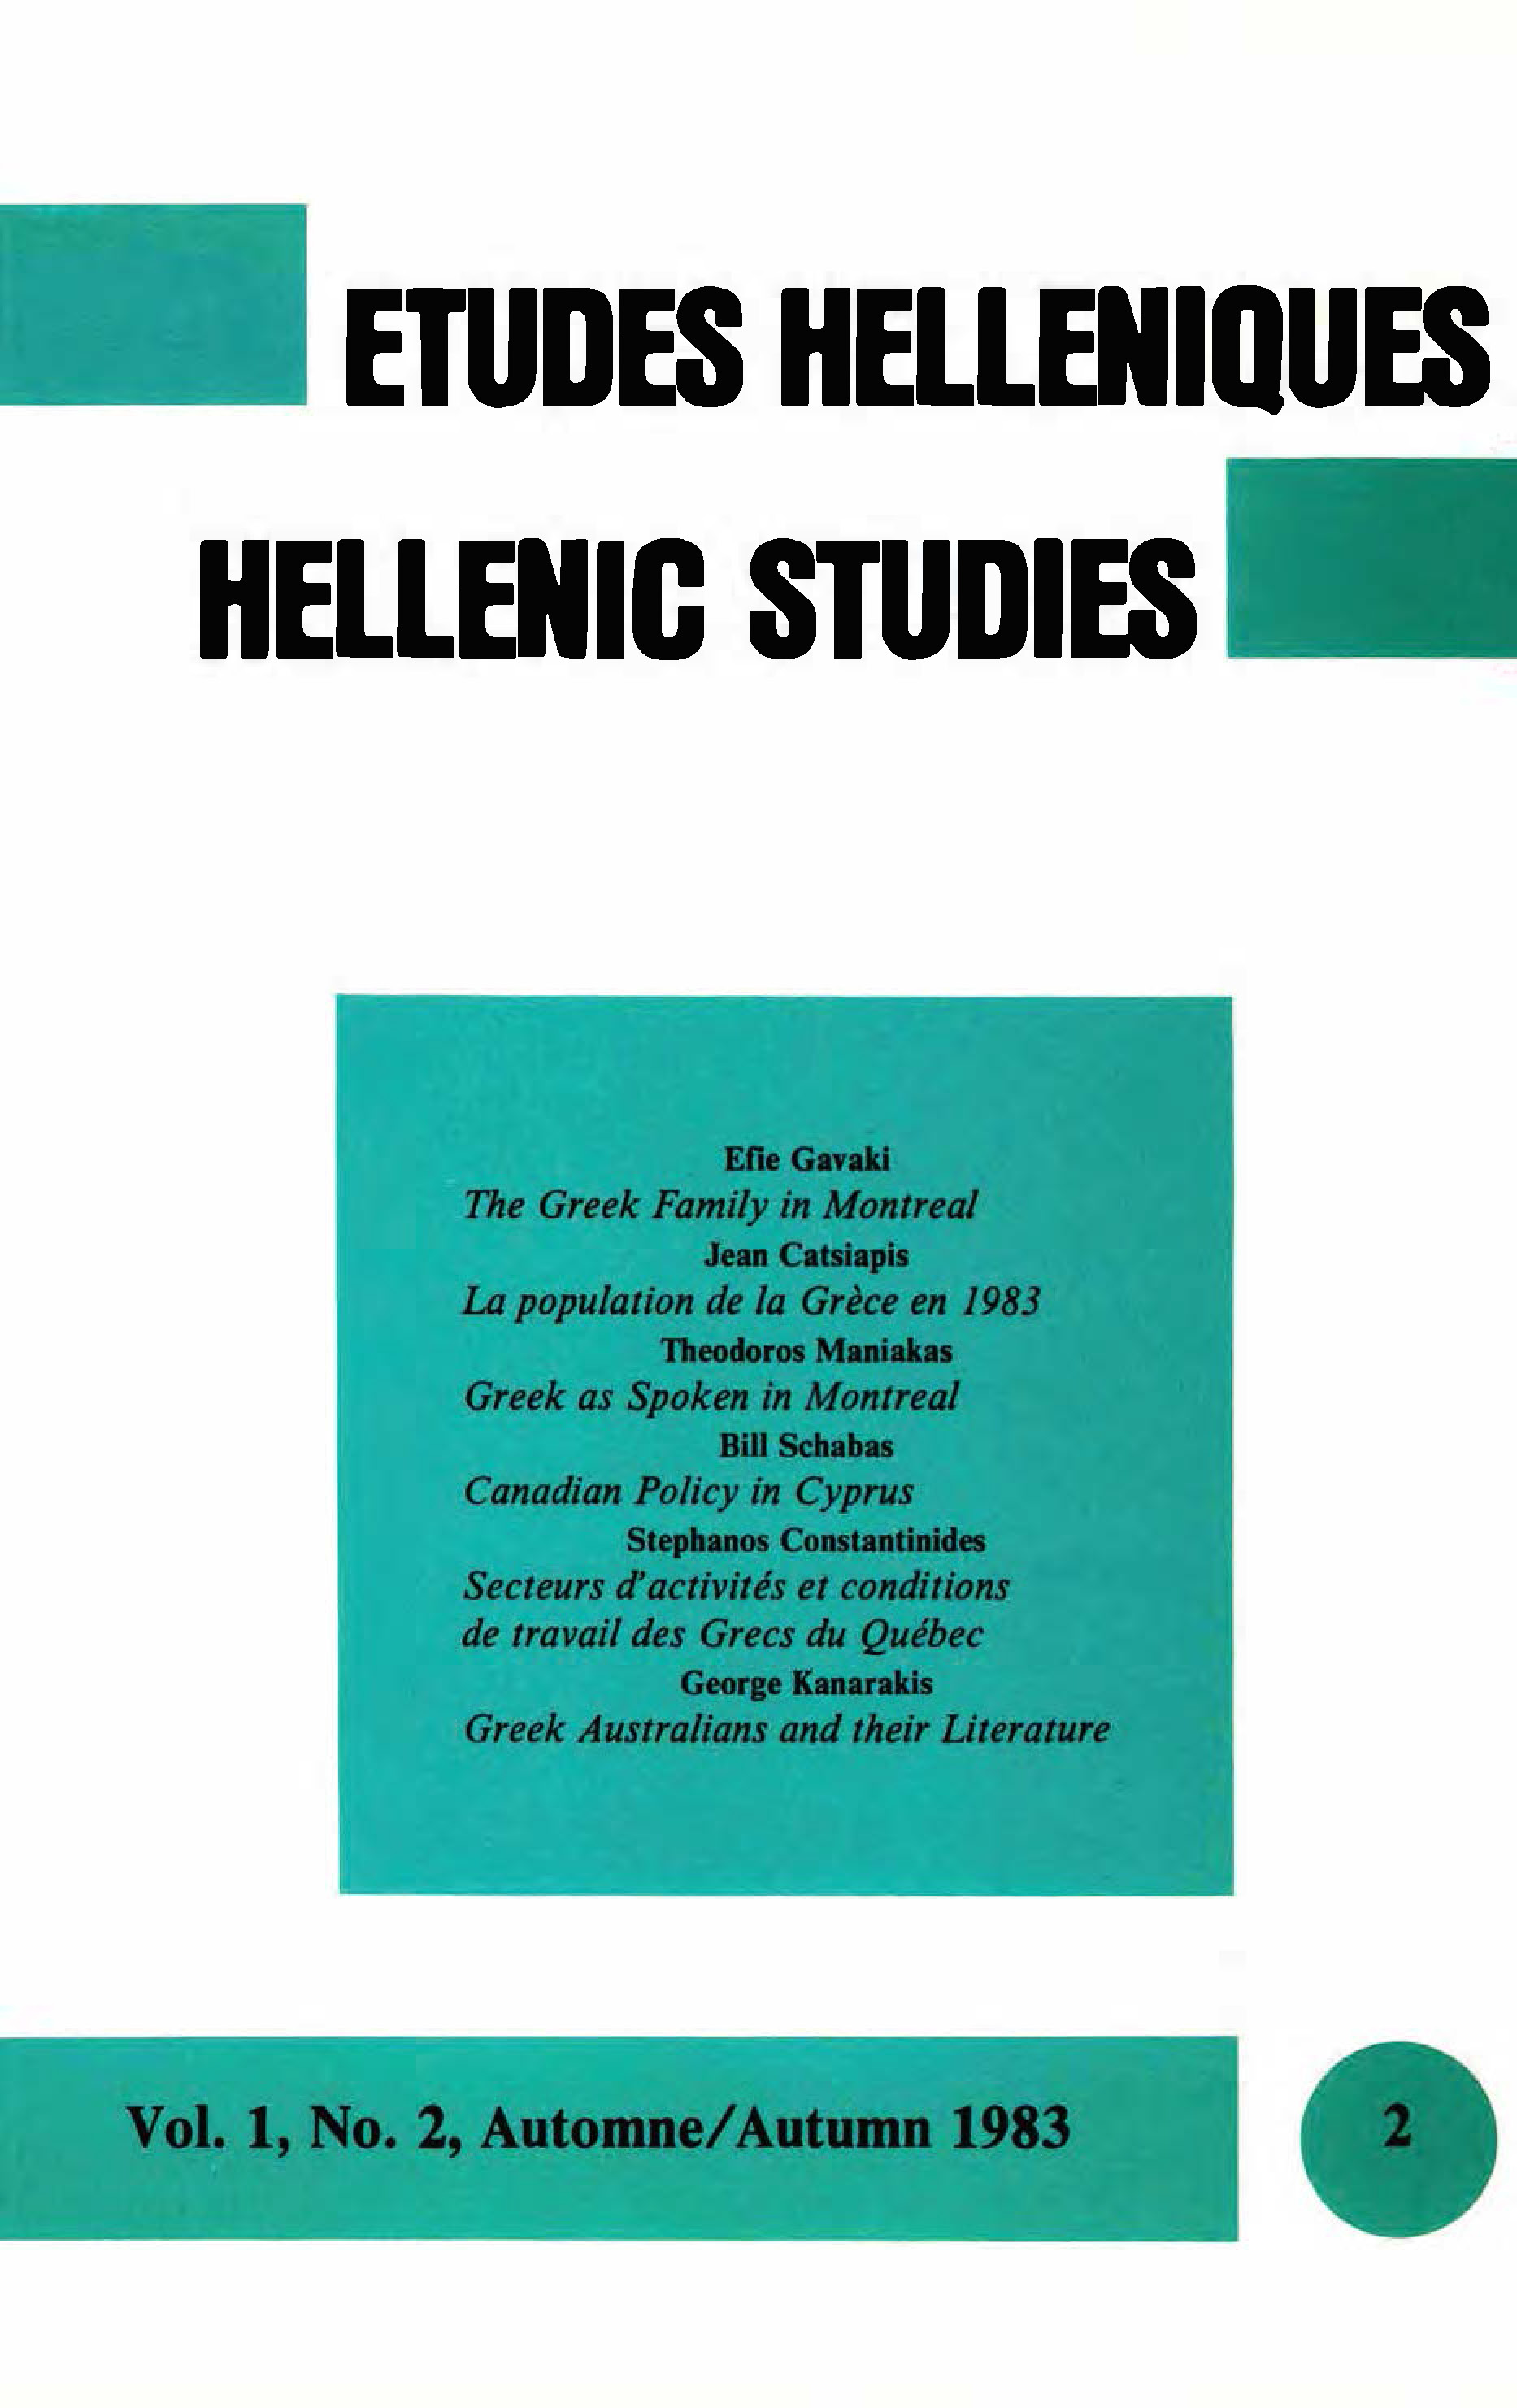 Études helléniques / Hellenic Studies, Volume 1, No 2, 1983, cover